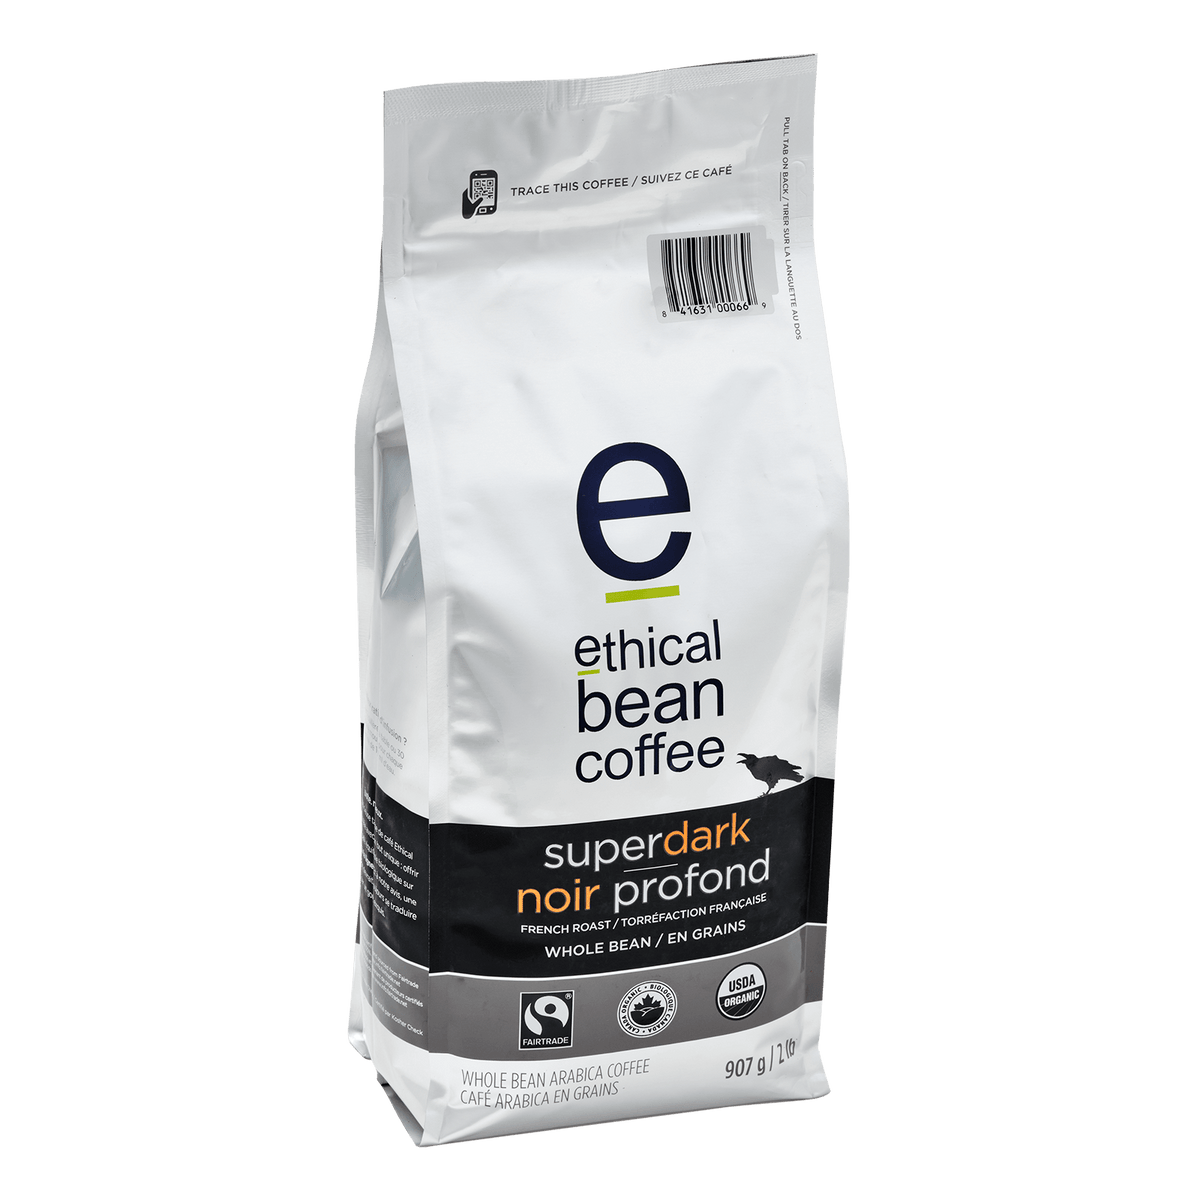 superdark whole bean 2lbs bag - Ethical Bean Coffee Canada